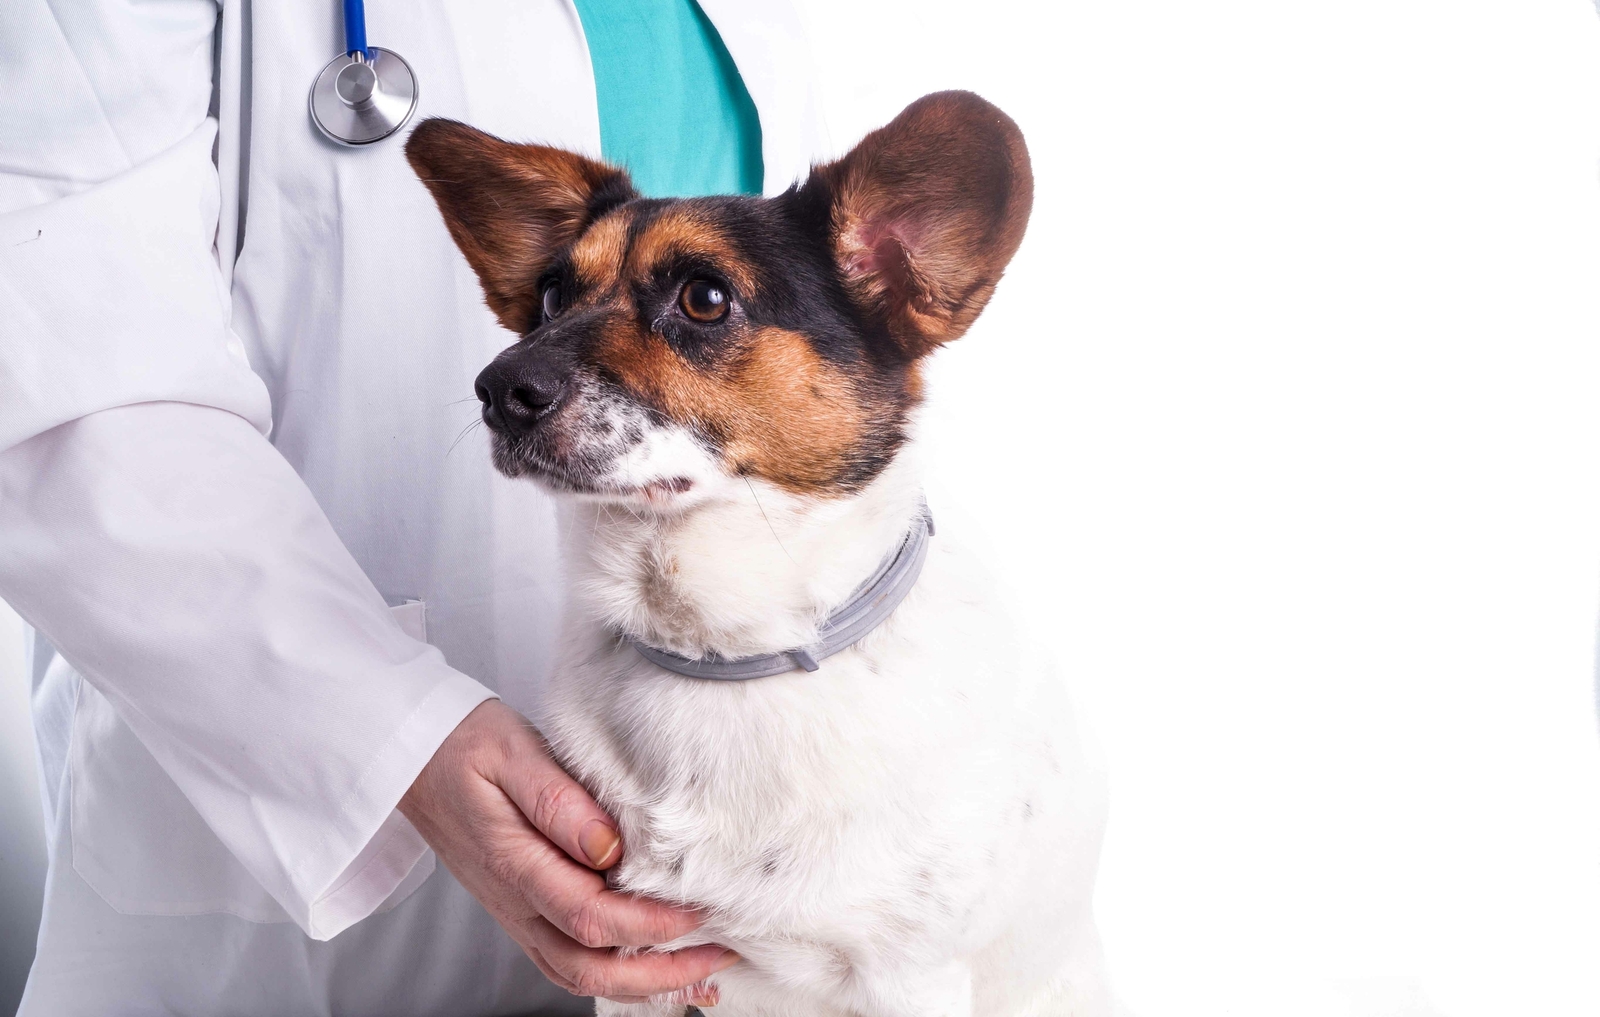 Hund und Tierarzt im weißen Kittel